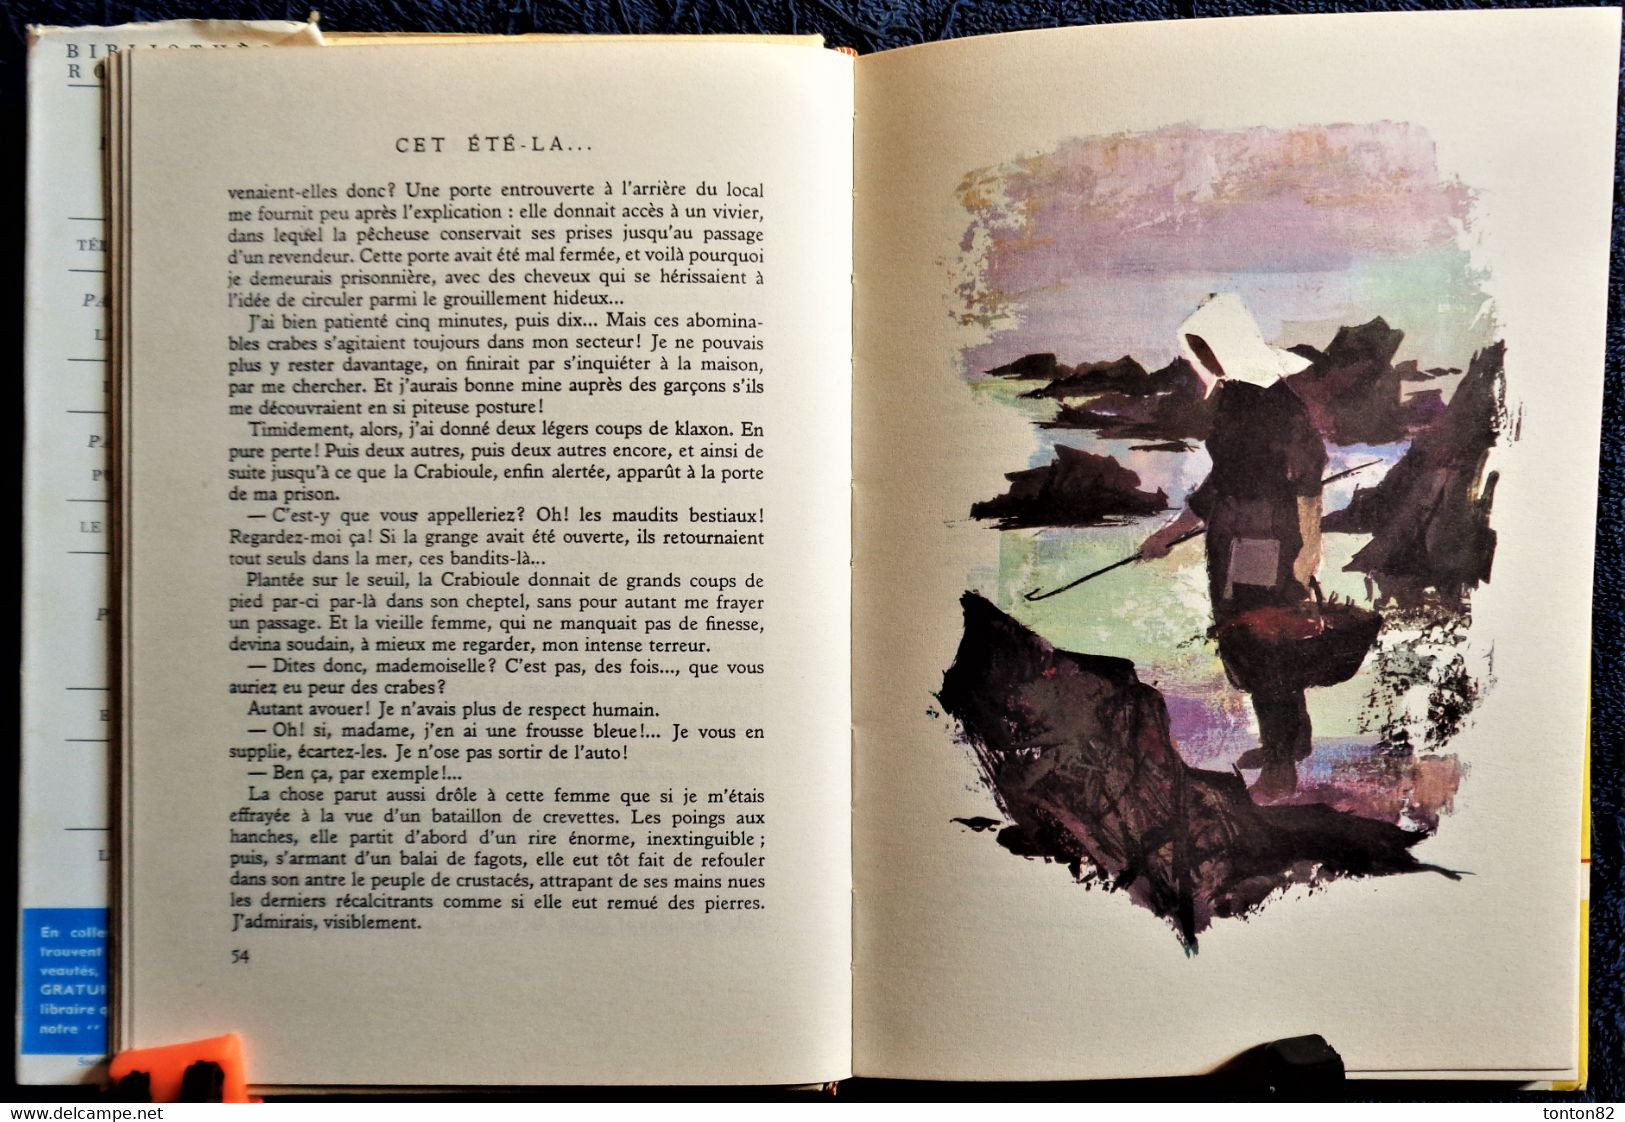 Saint-Marcoux - Cet été-là ... - Bibliothèque Rouge et Or n° 613 - ( 1961 ) .